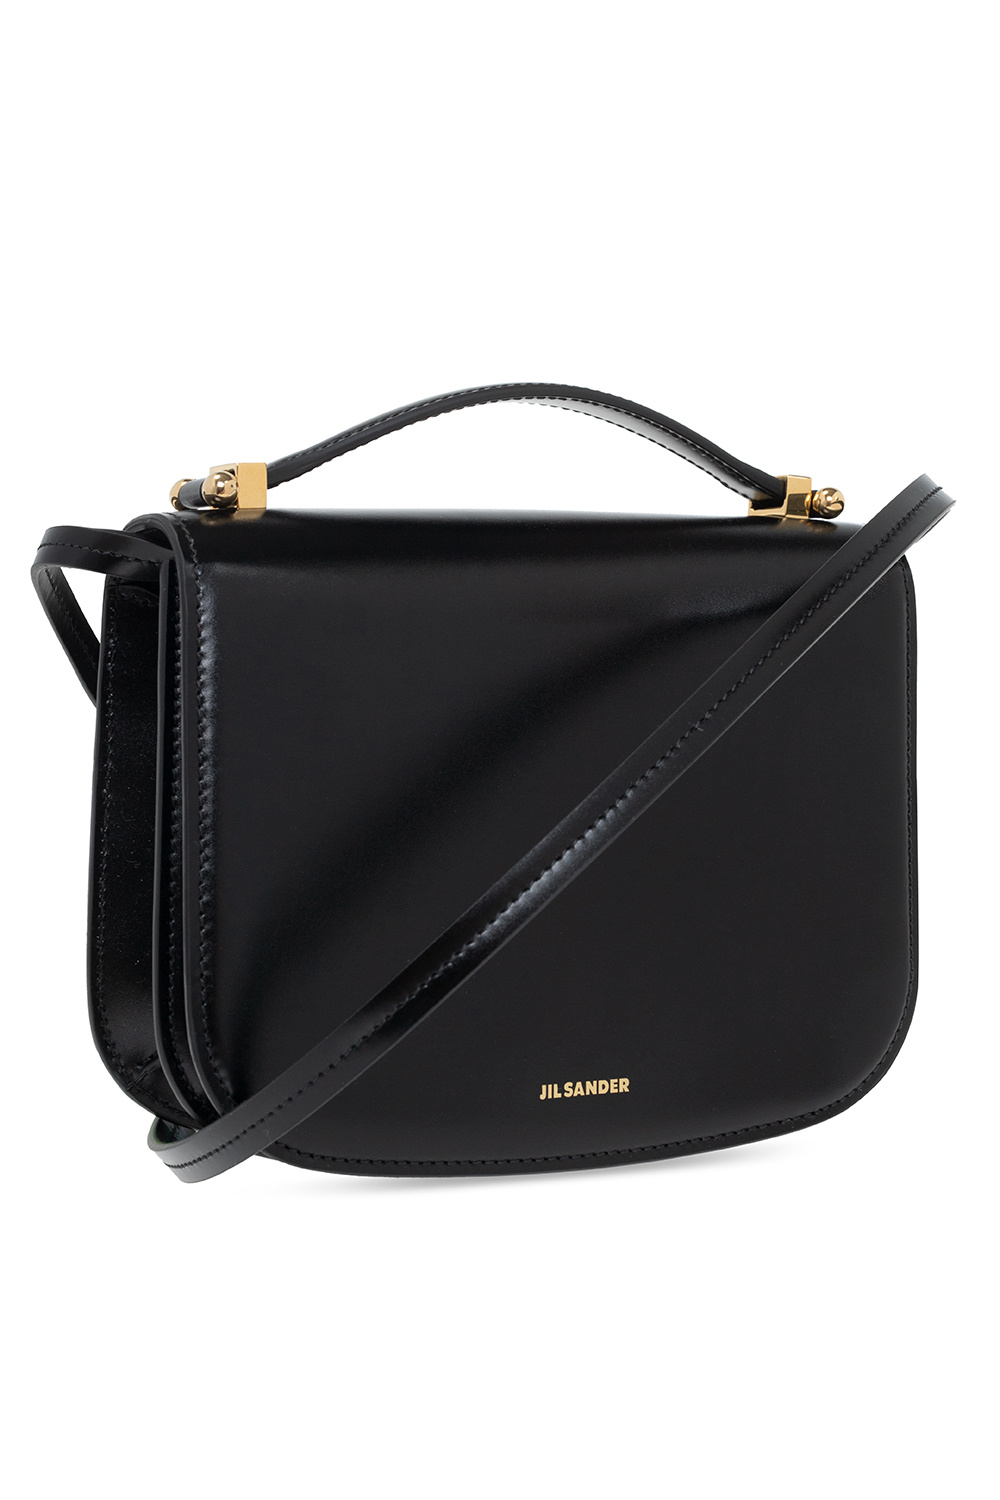 JIL SANDER Leather shoulder bag | Women's Bags | Vitkac